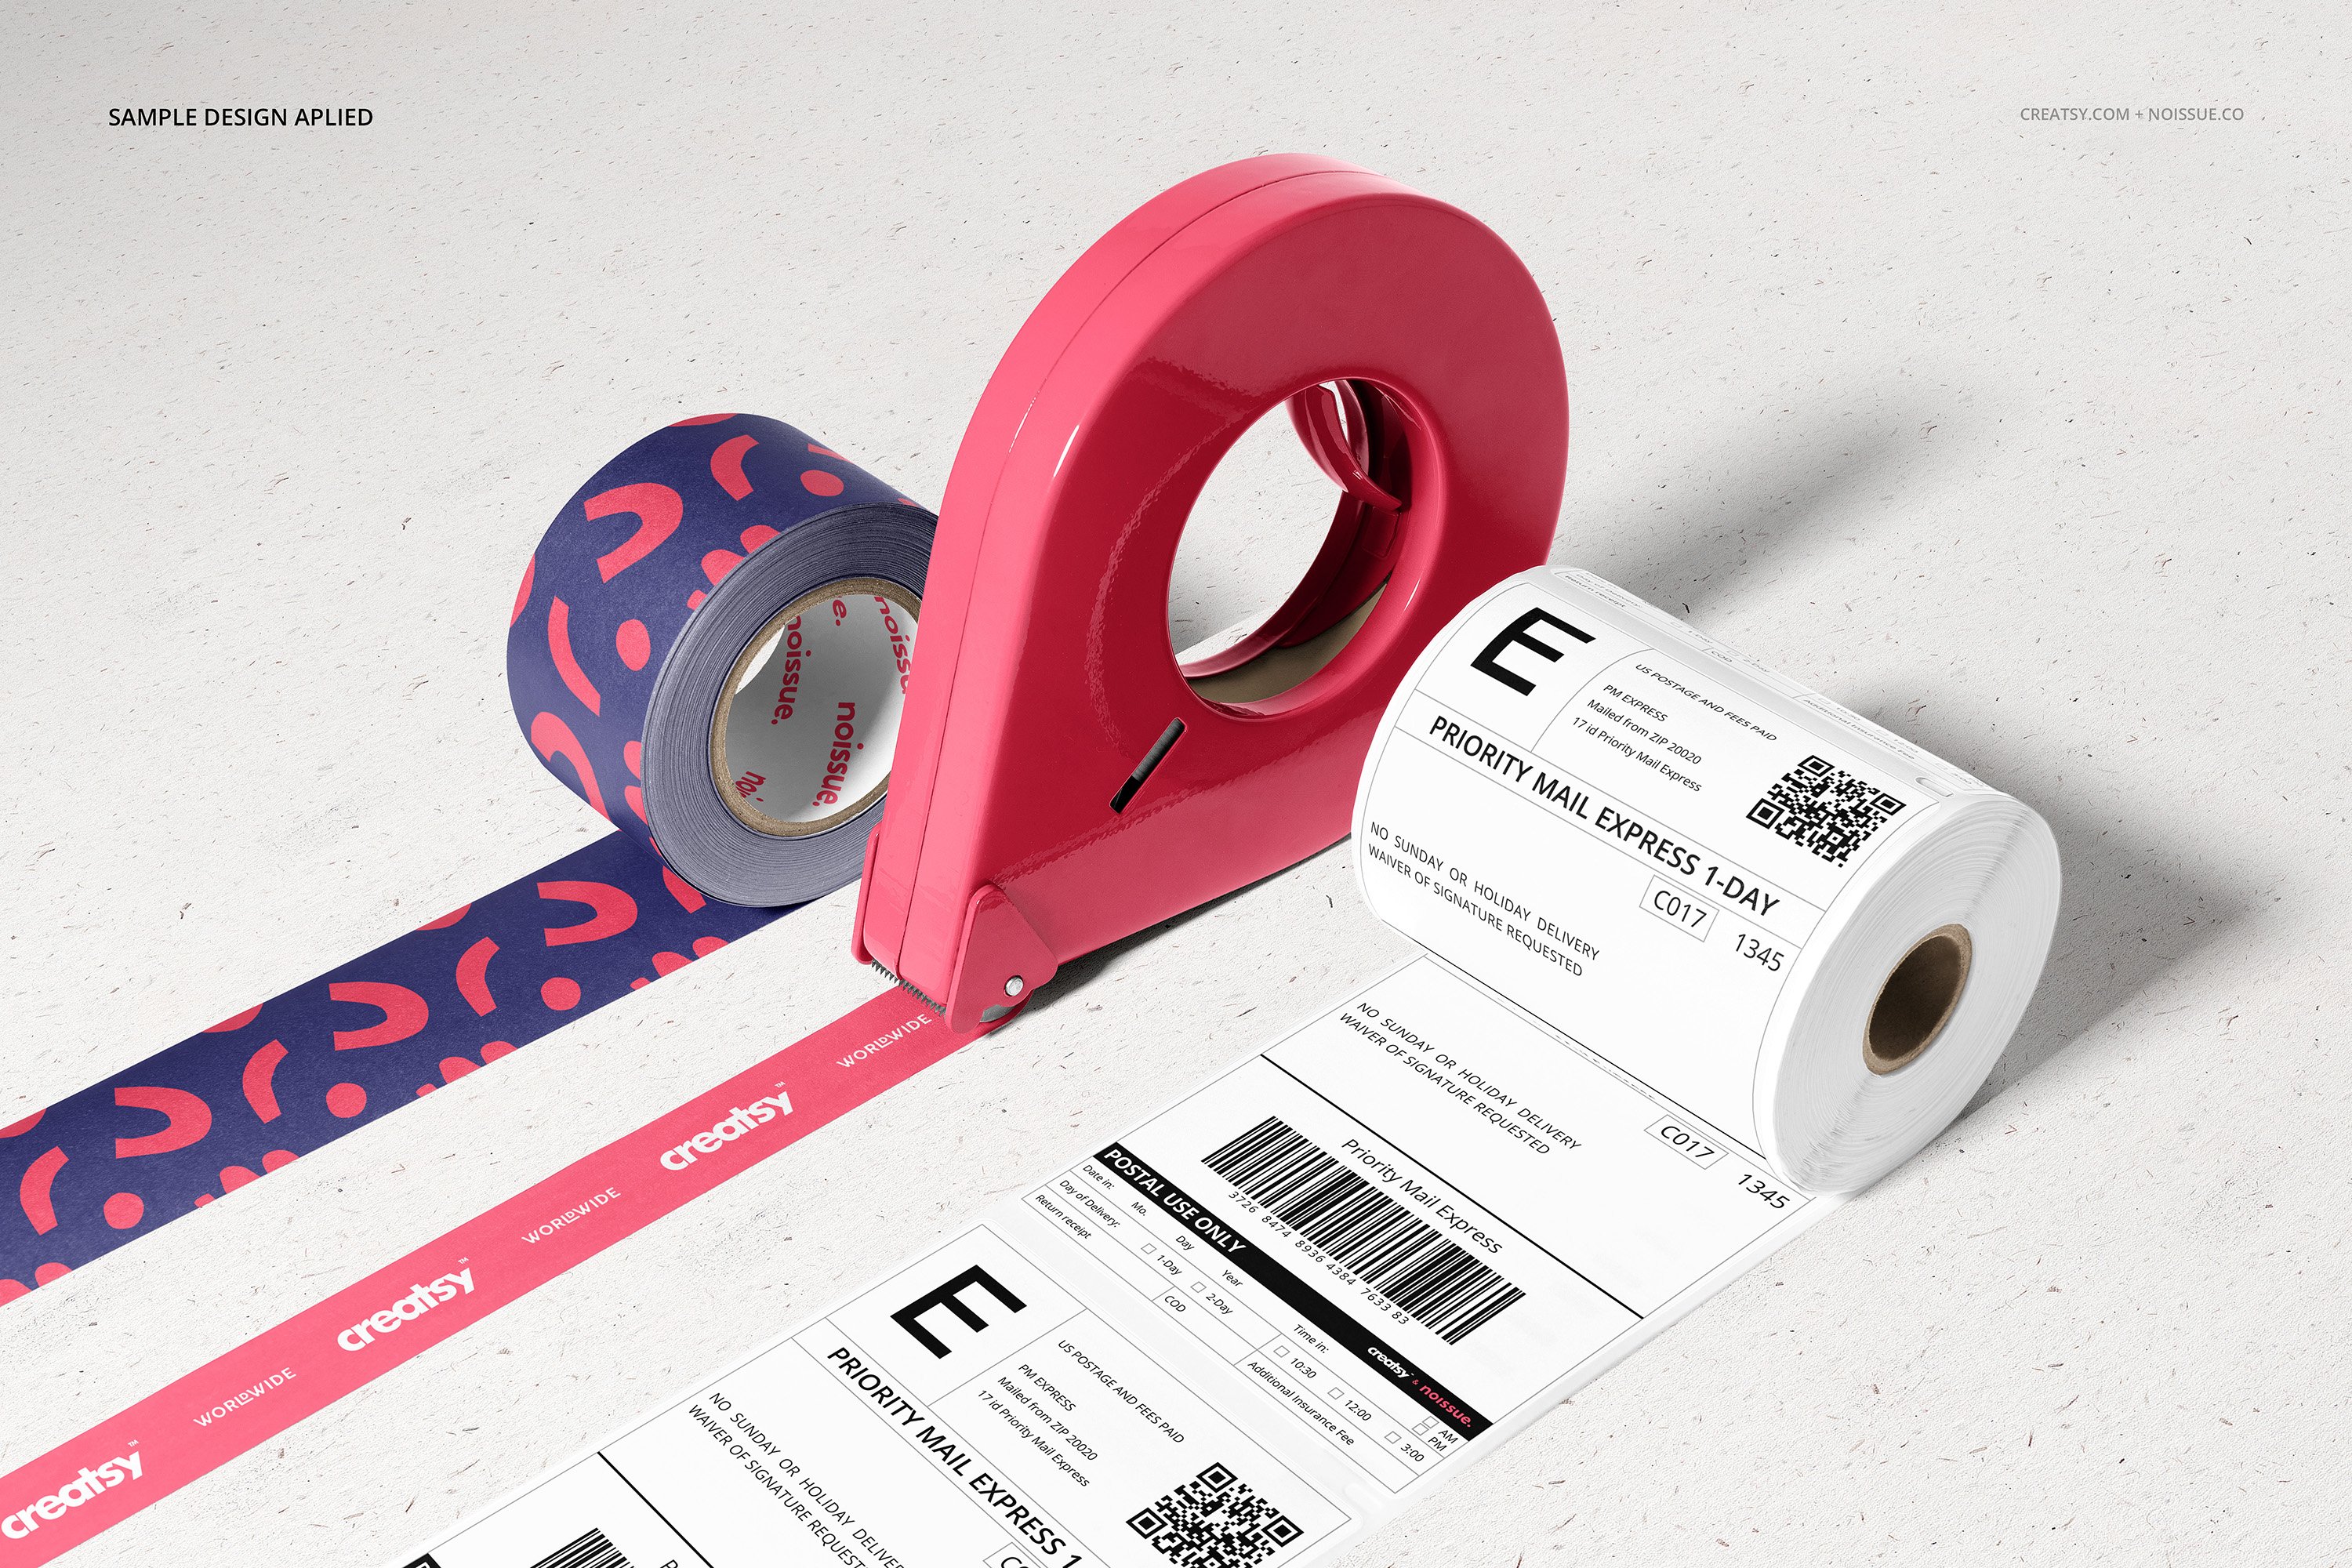 17款高品质快递邮件包装箱气泡袋标签设计展示贴图样机合集 Noissue Shipping Labels Mockup Set